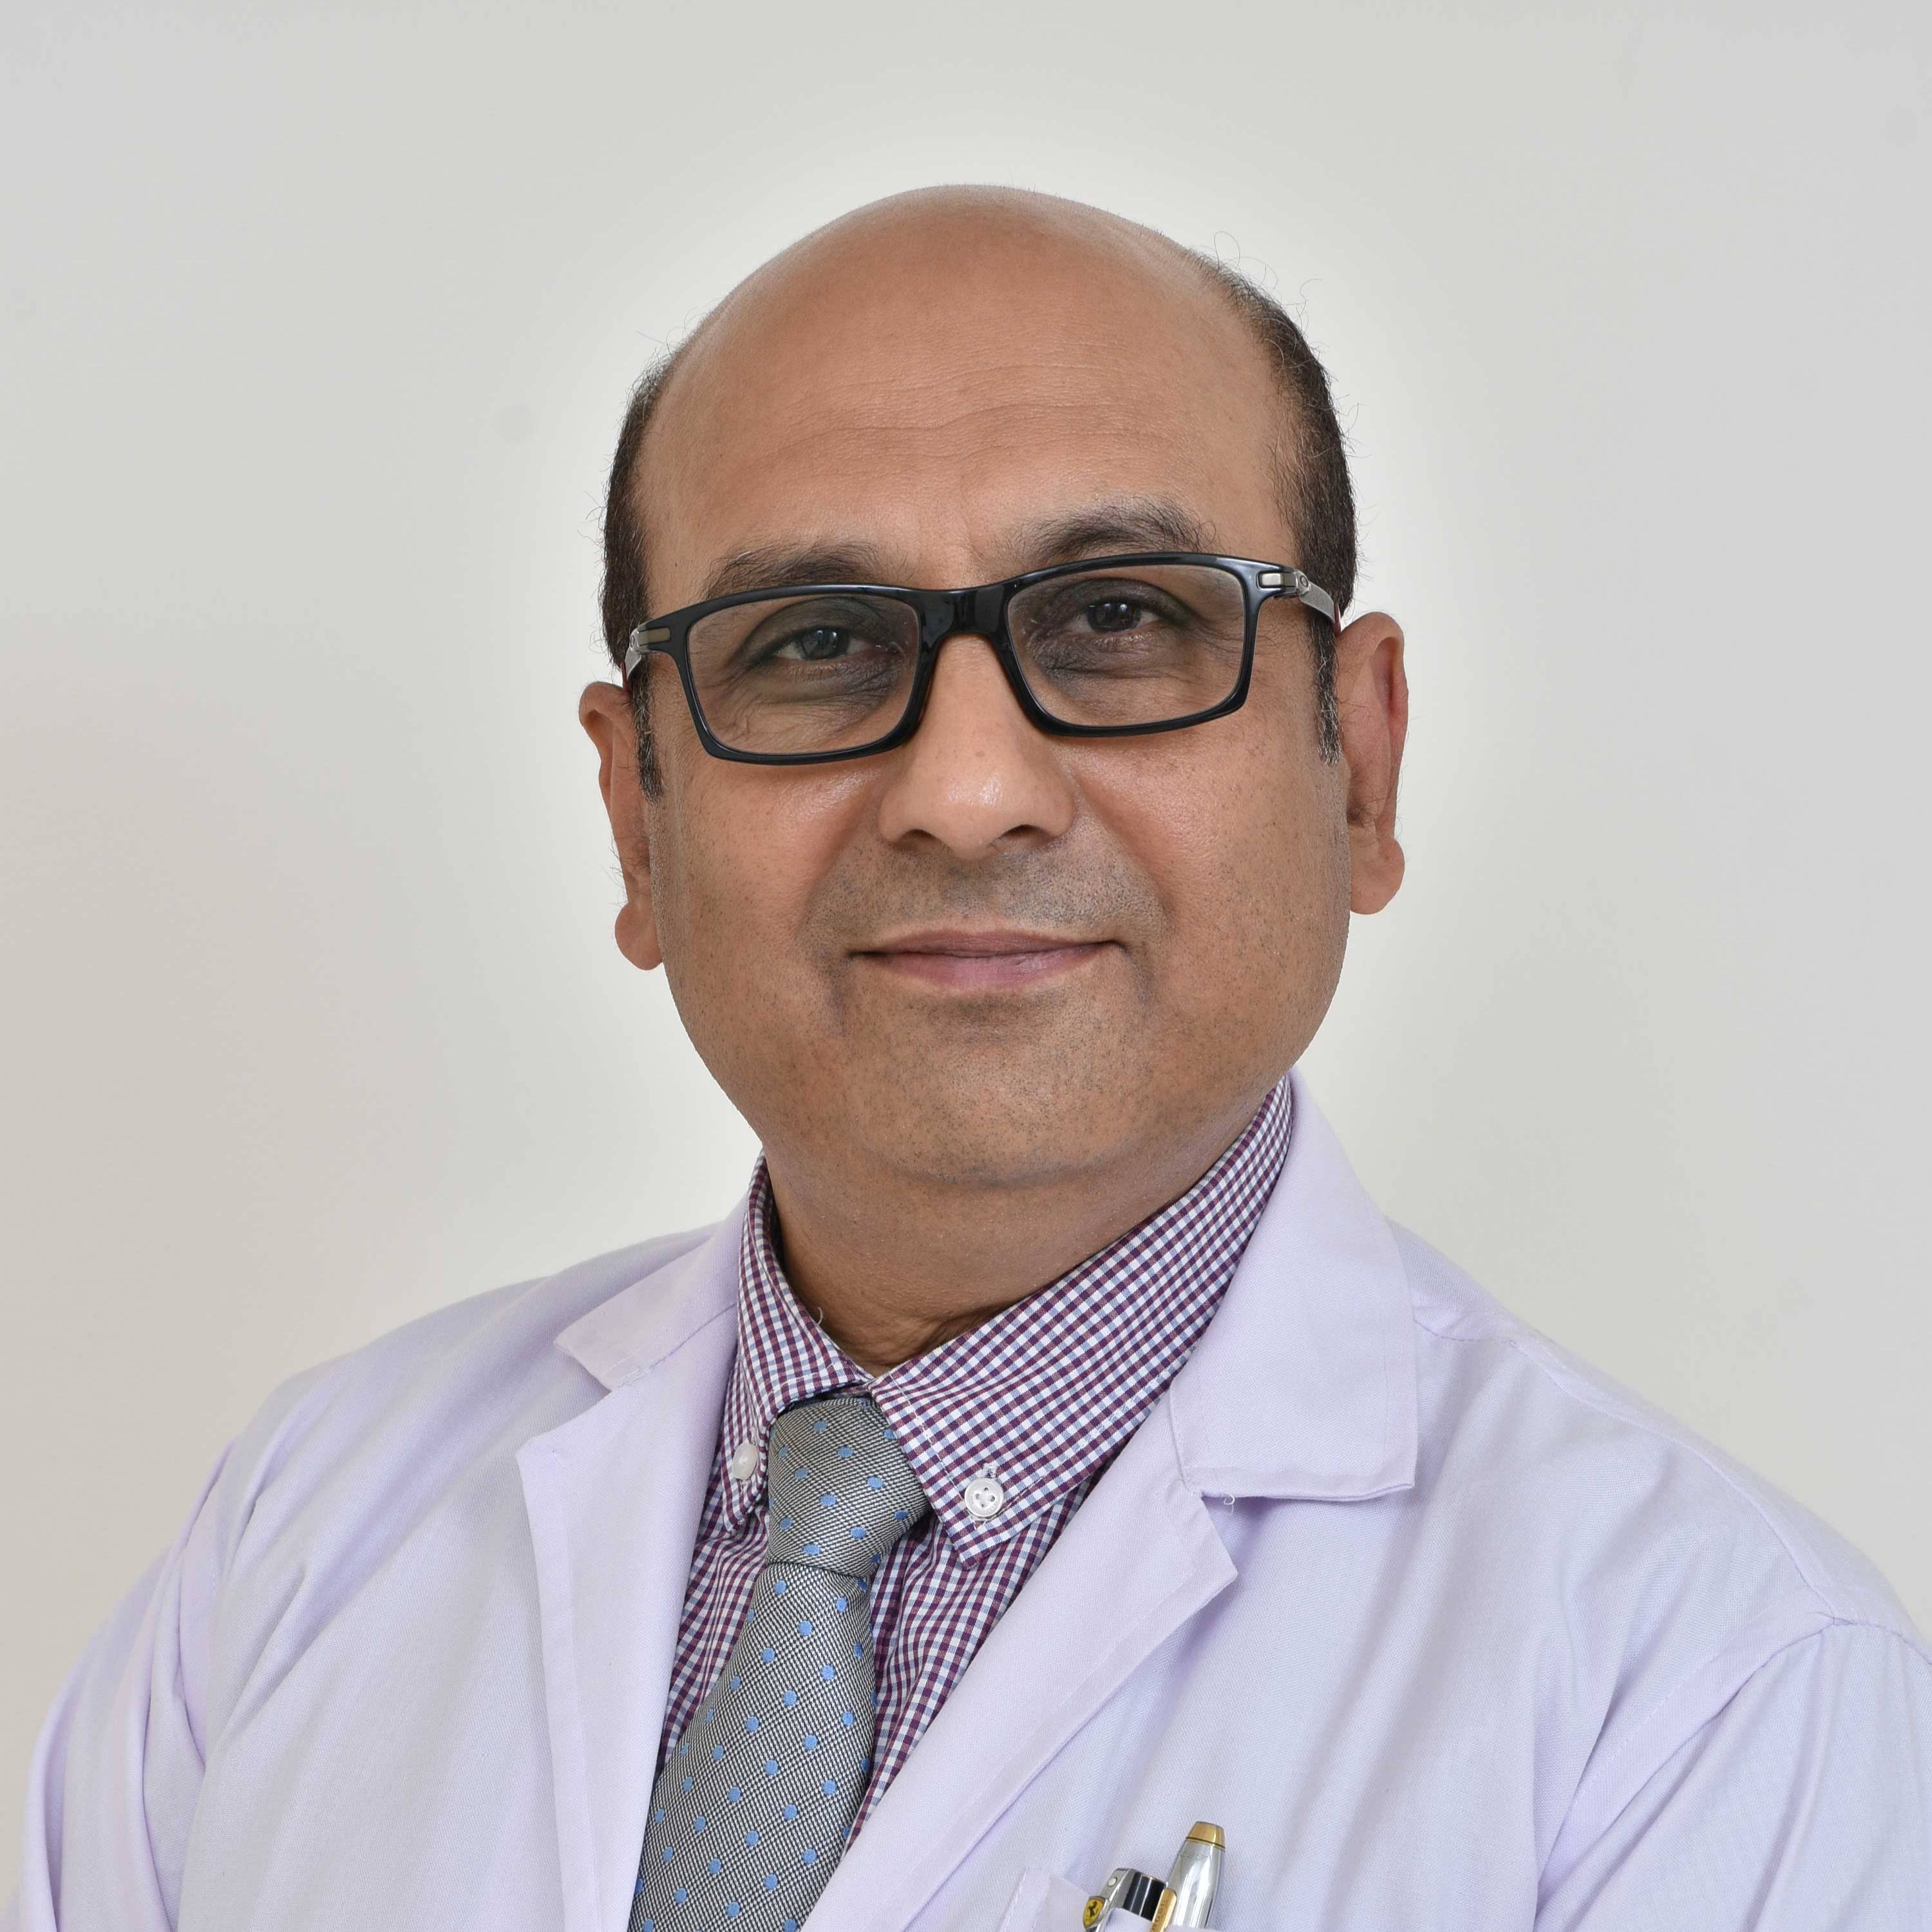 Dr. Sachin Bhonsle